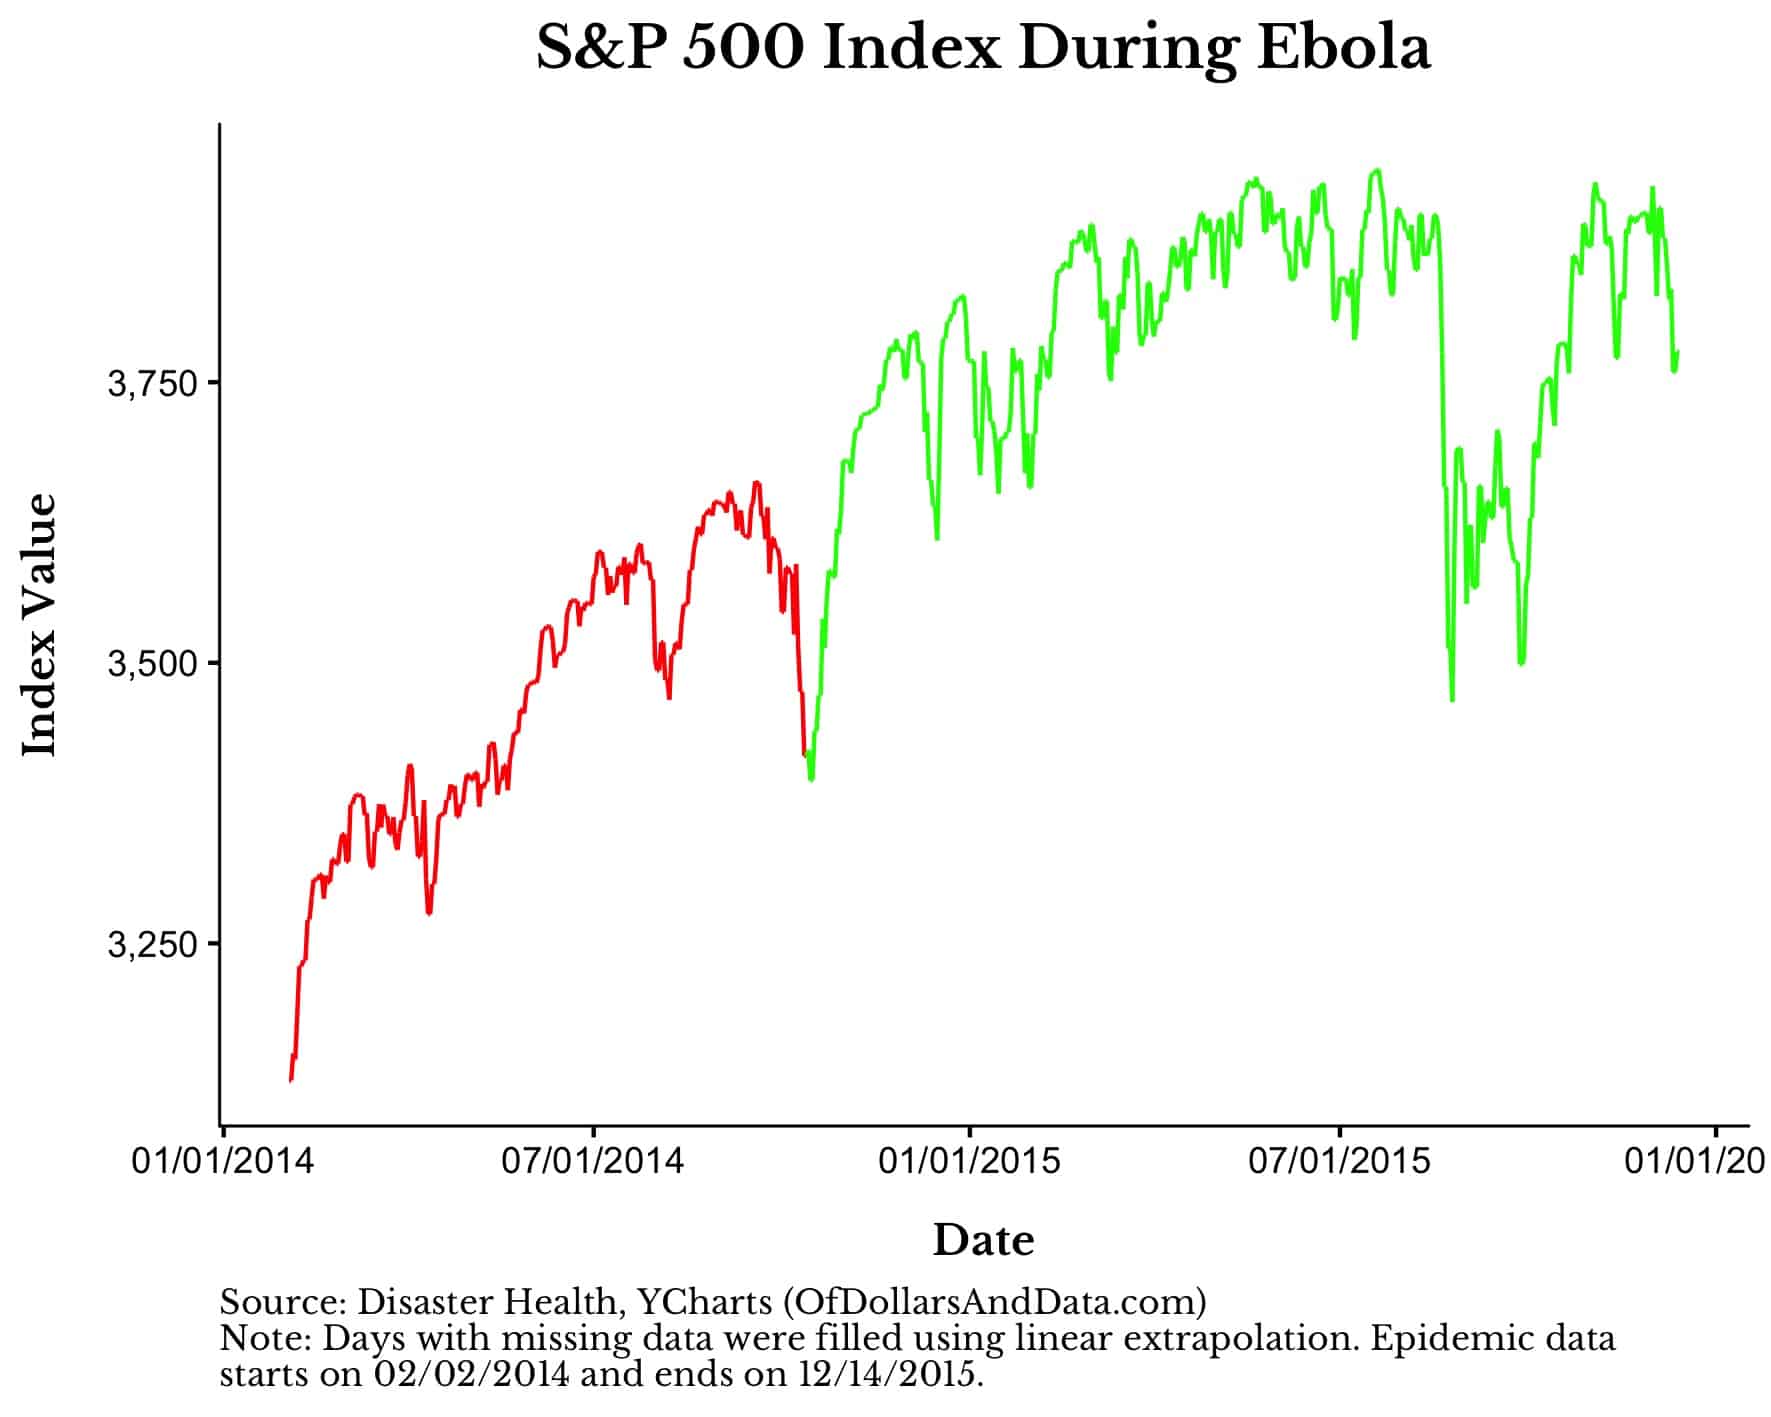 S&P 500 index during Ebola